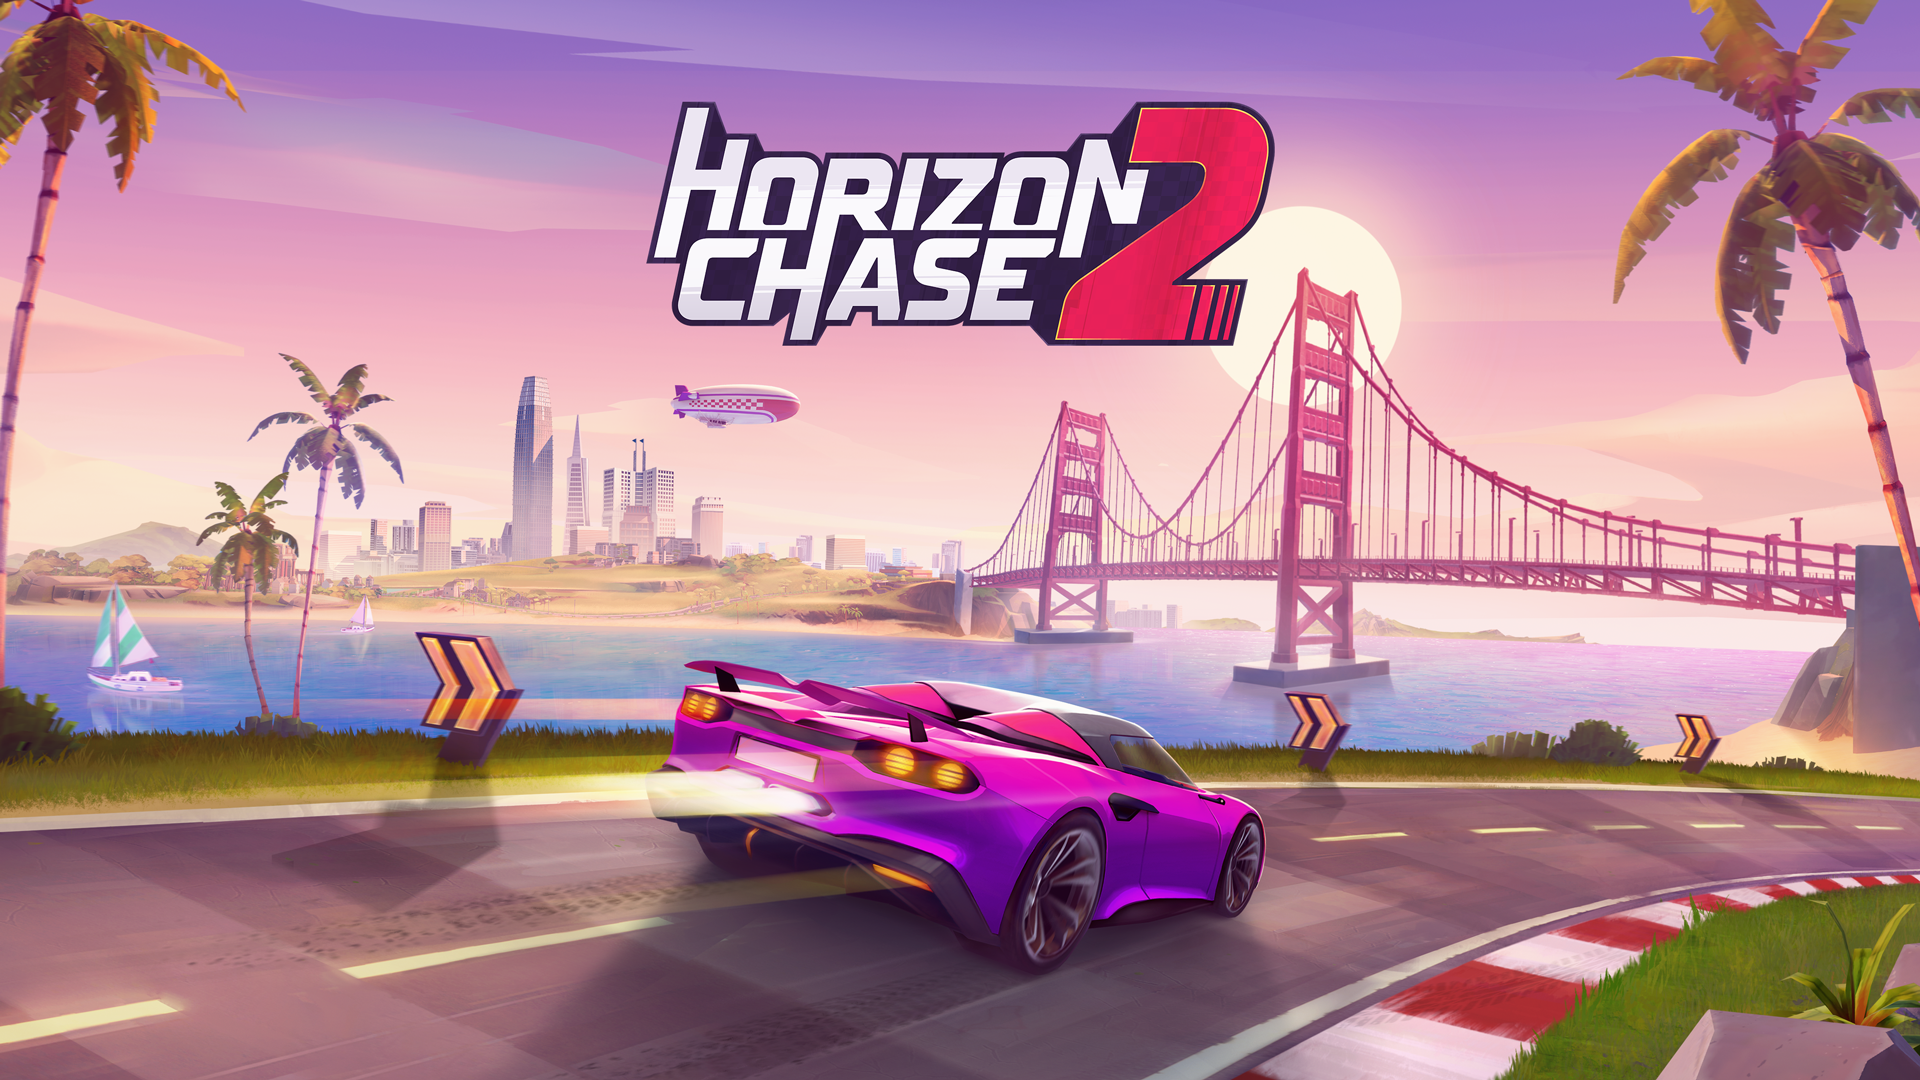 Análise | Horizon Chase 2 é uma ótima evolução da franquia